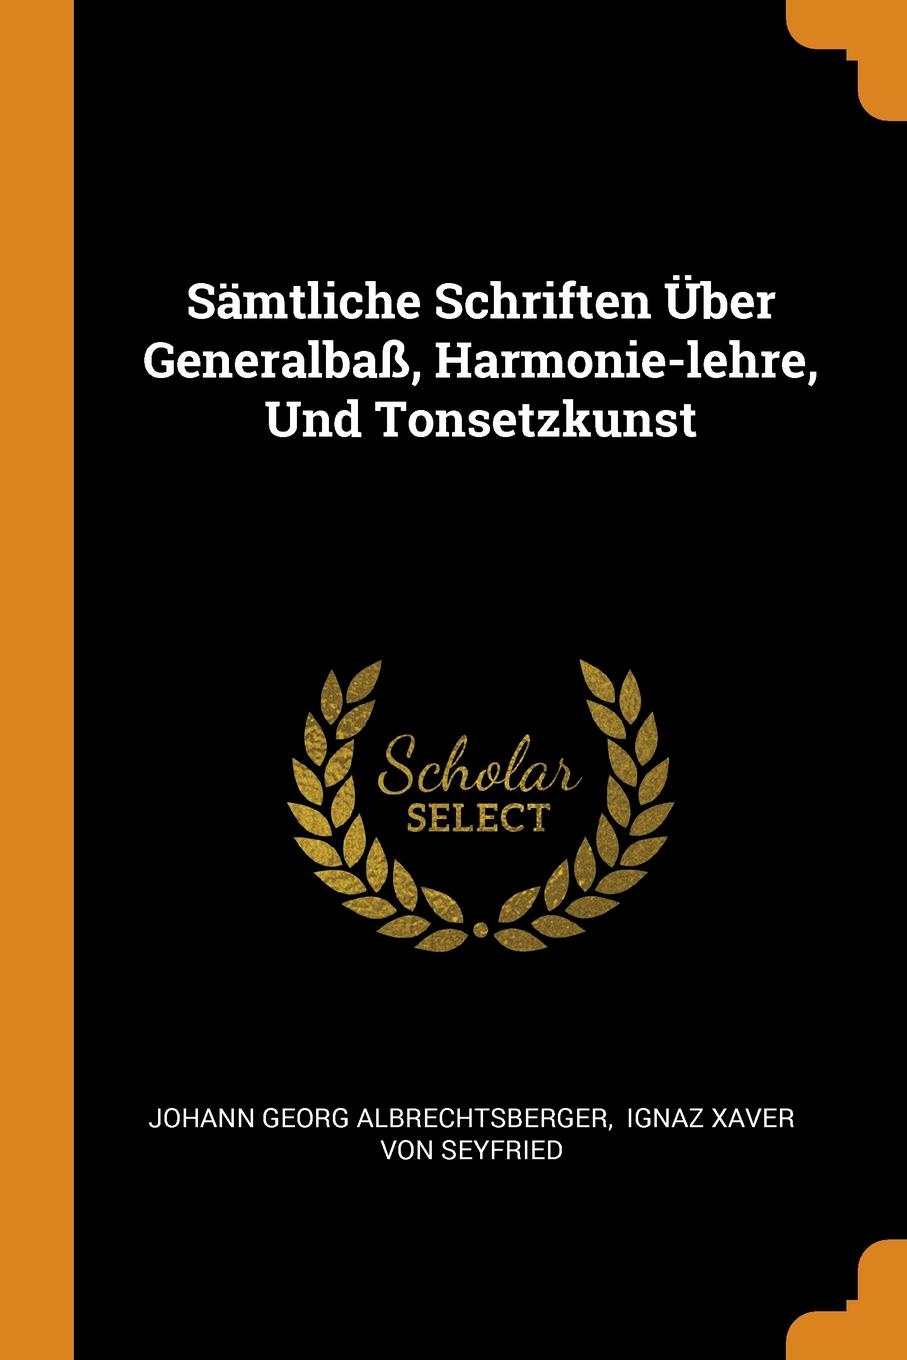 Samtliche Schriften Uber Generalbass, Harmonie-lehre, Und Tonsetzkunst